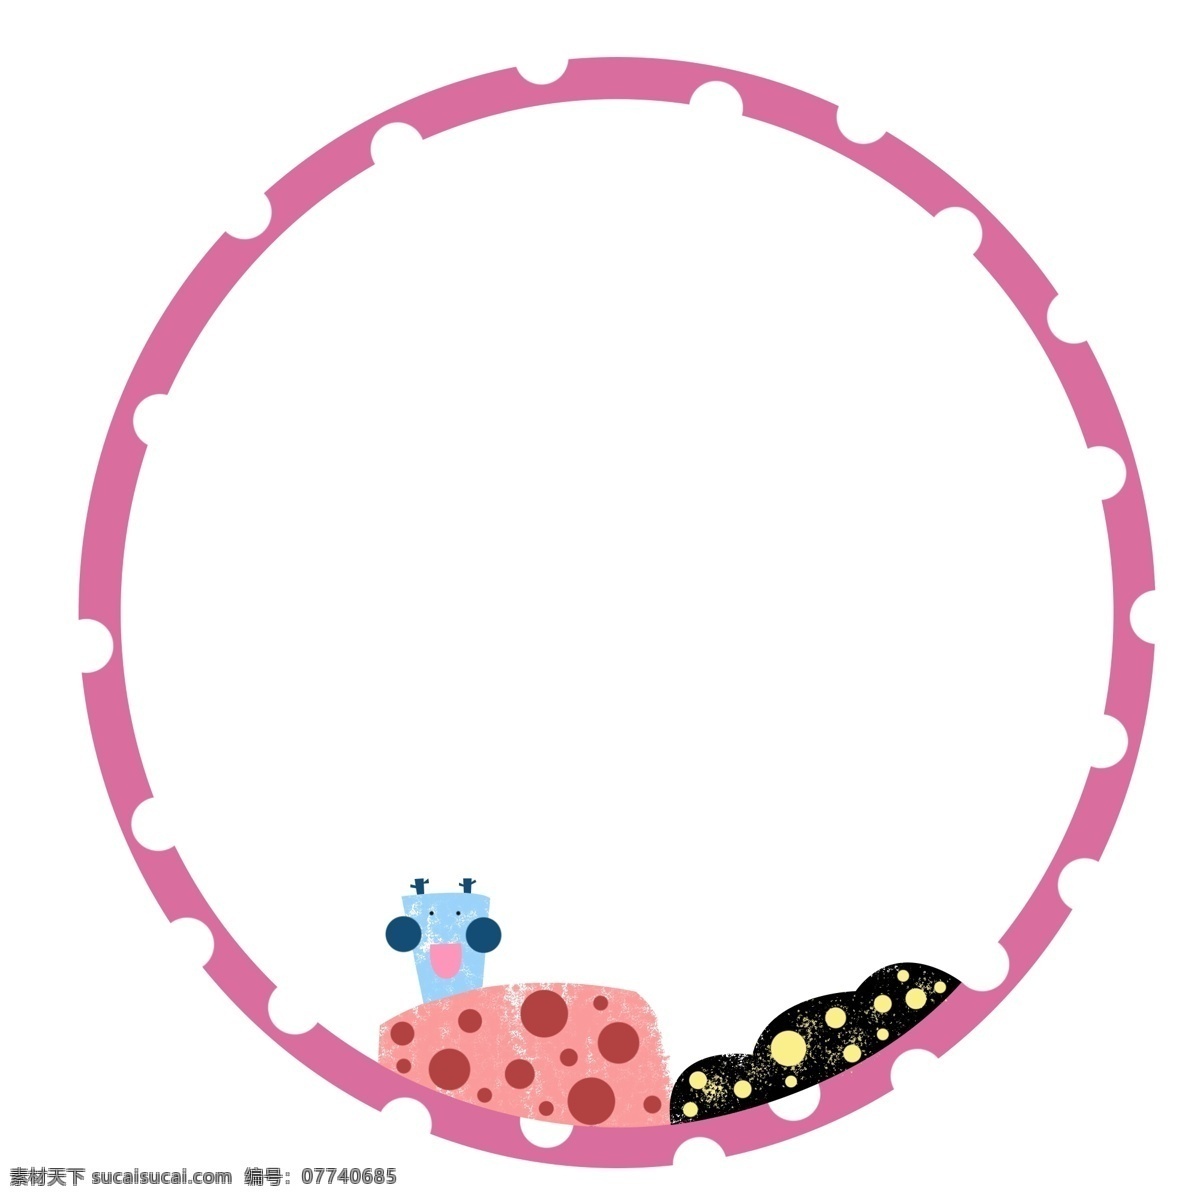 圆形 粉色 边框 插图 粉色蜗牛 漂亮的蜗牛 蜗牛边框 圆形边框 白色圆点 精美的边框 可爱的边框 装饰边框